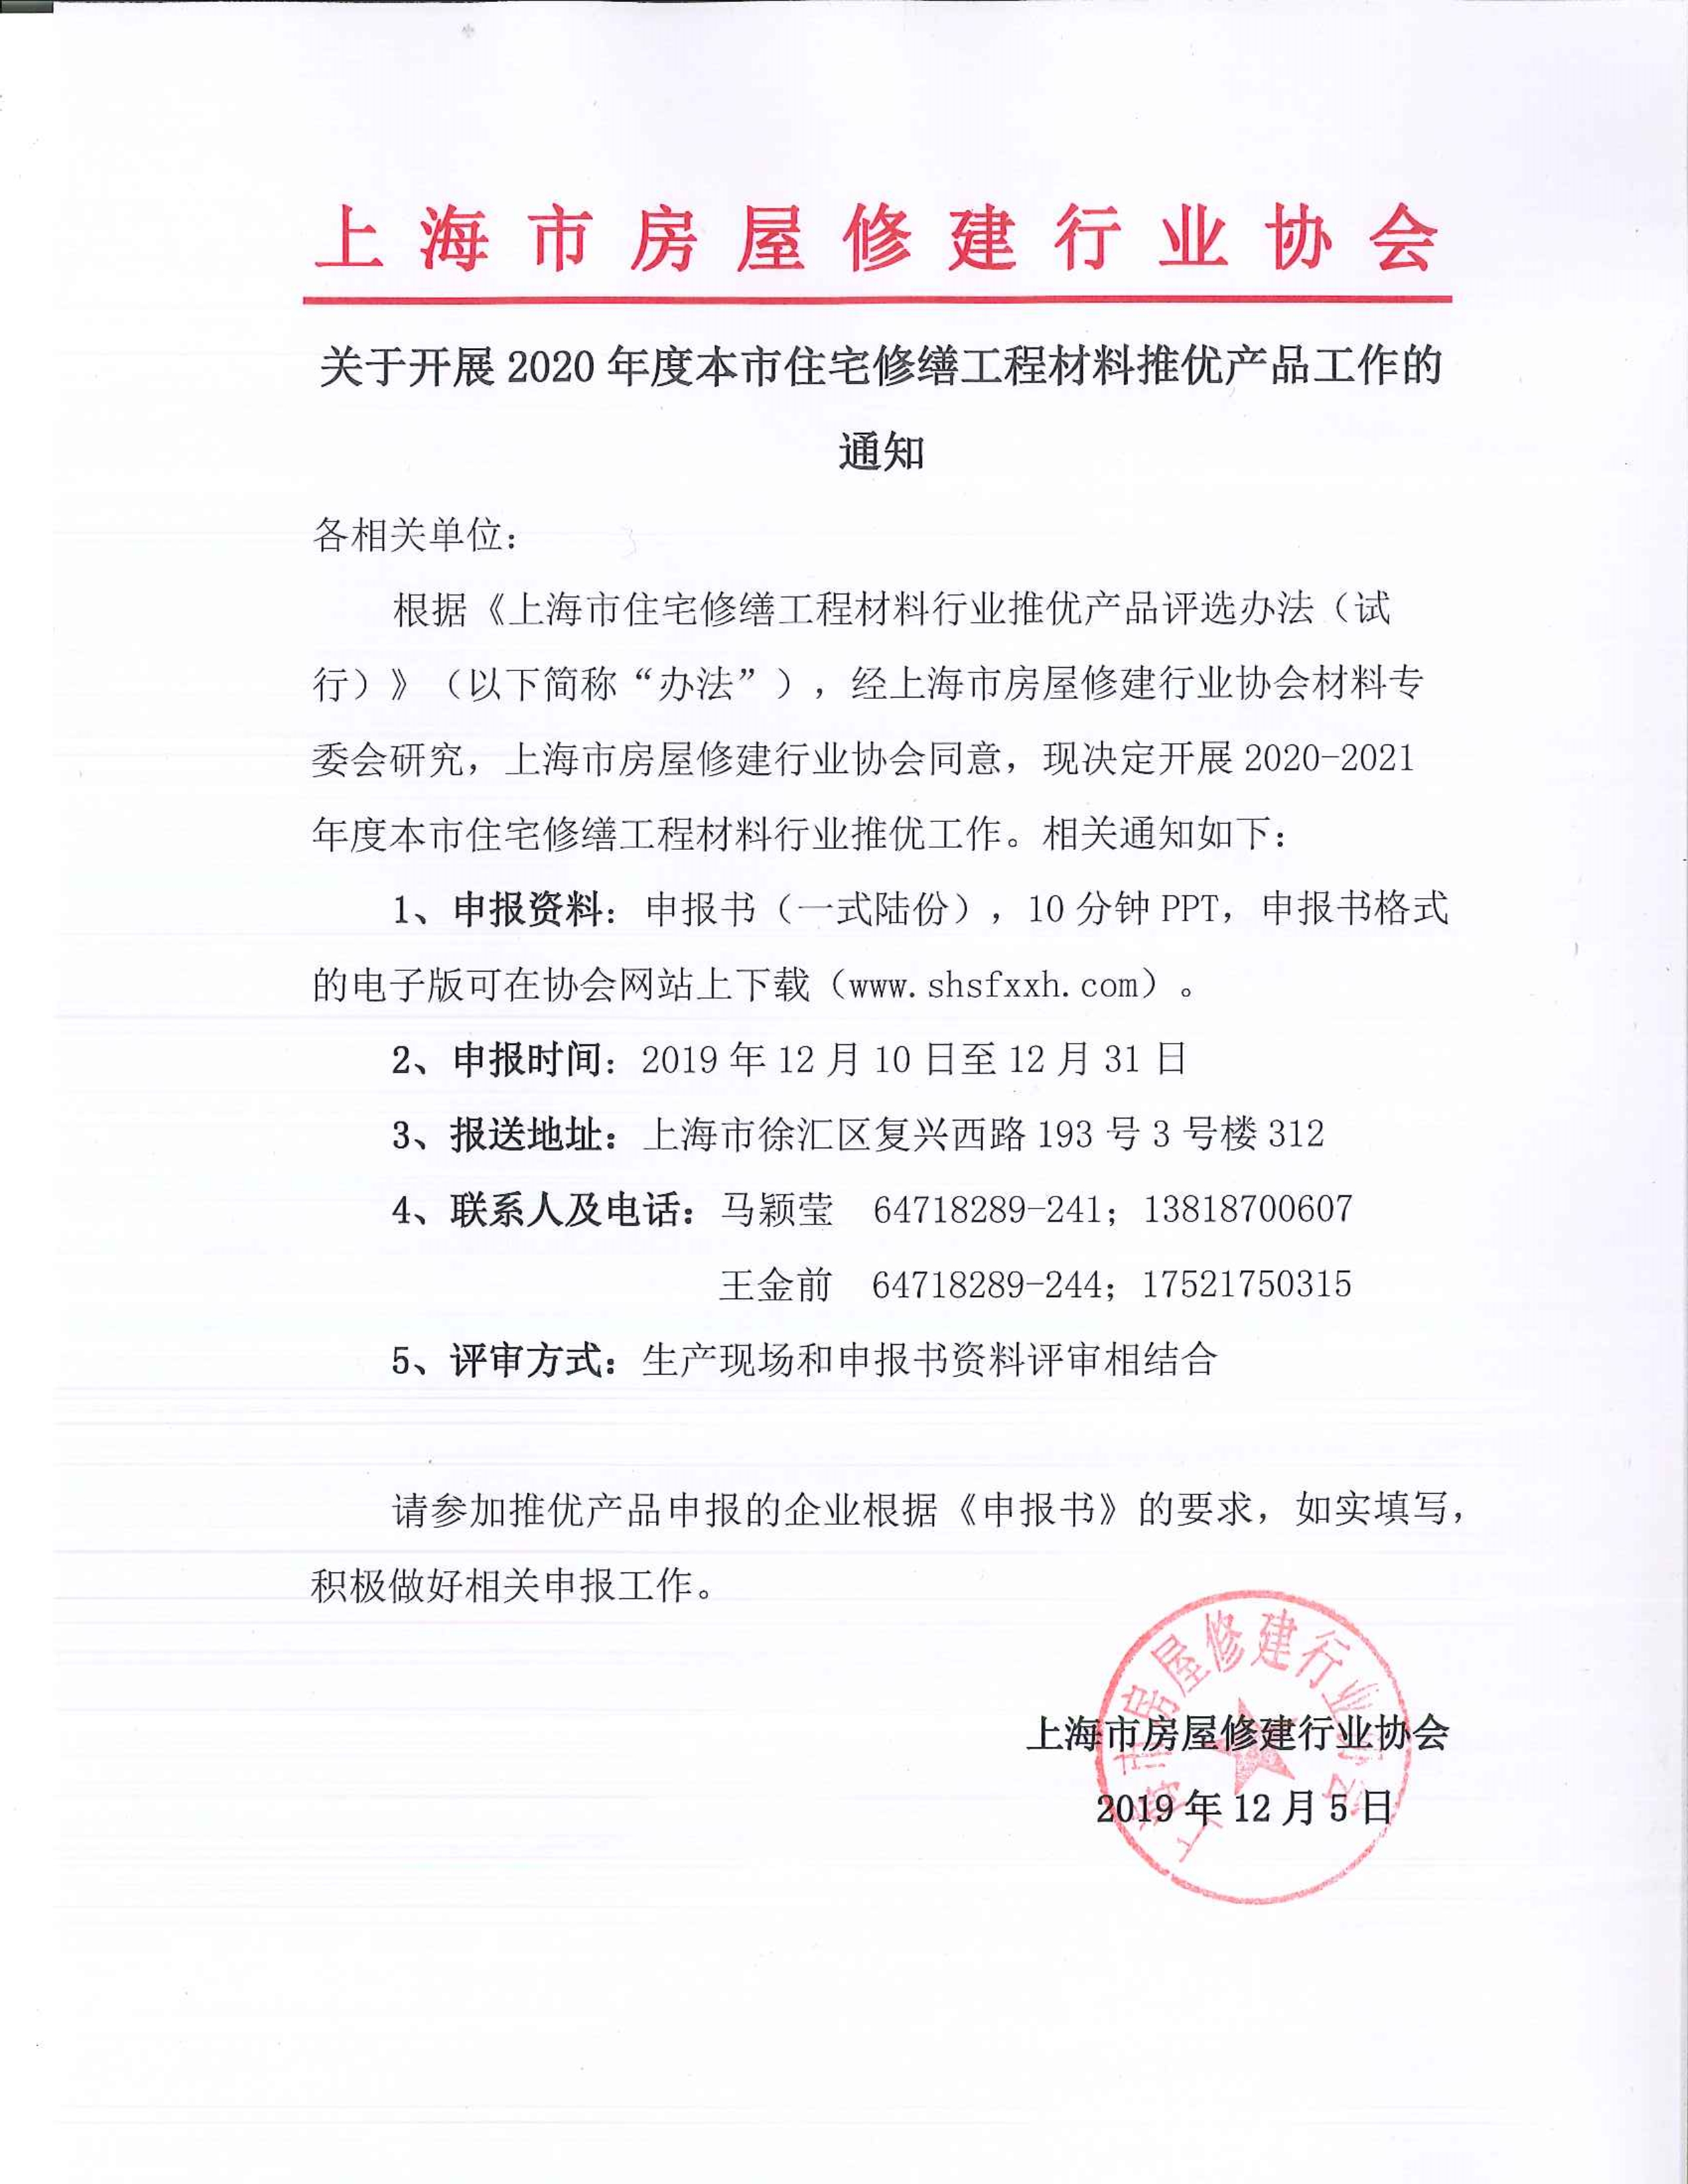 00-2020年度上海市住宅修缮工程材料行业推优评选通知.jpg